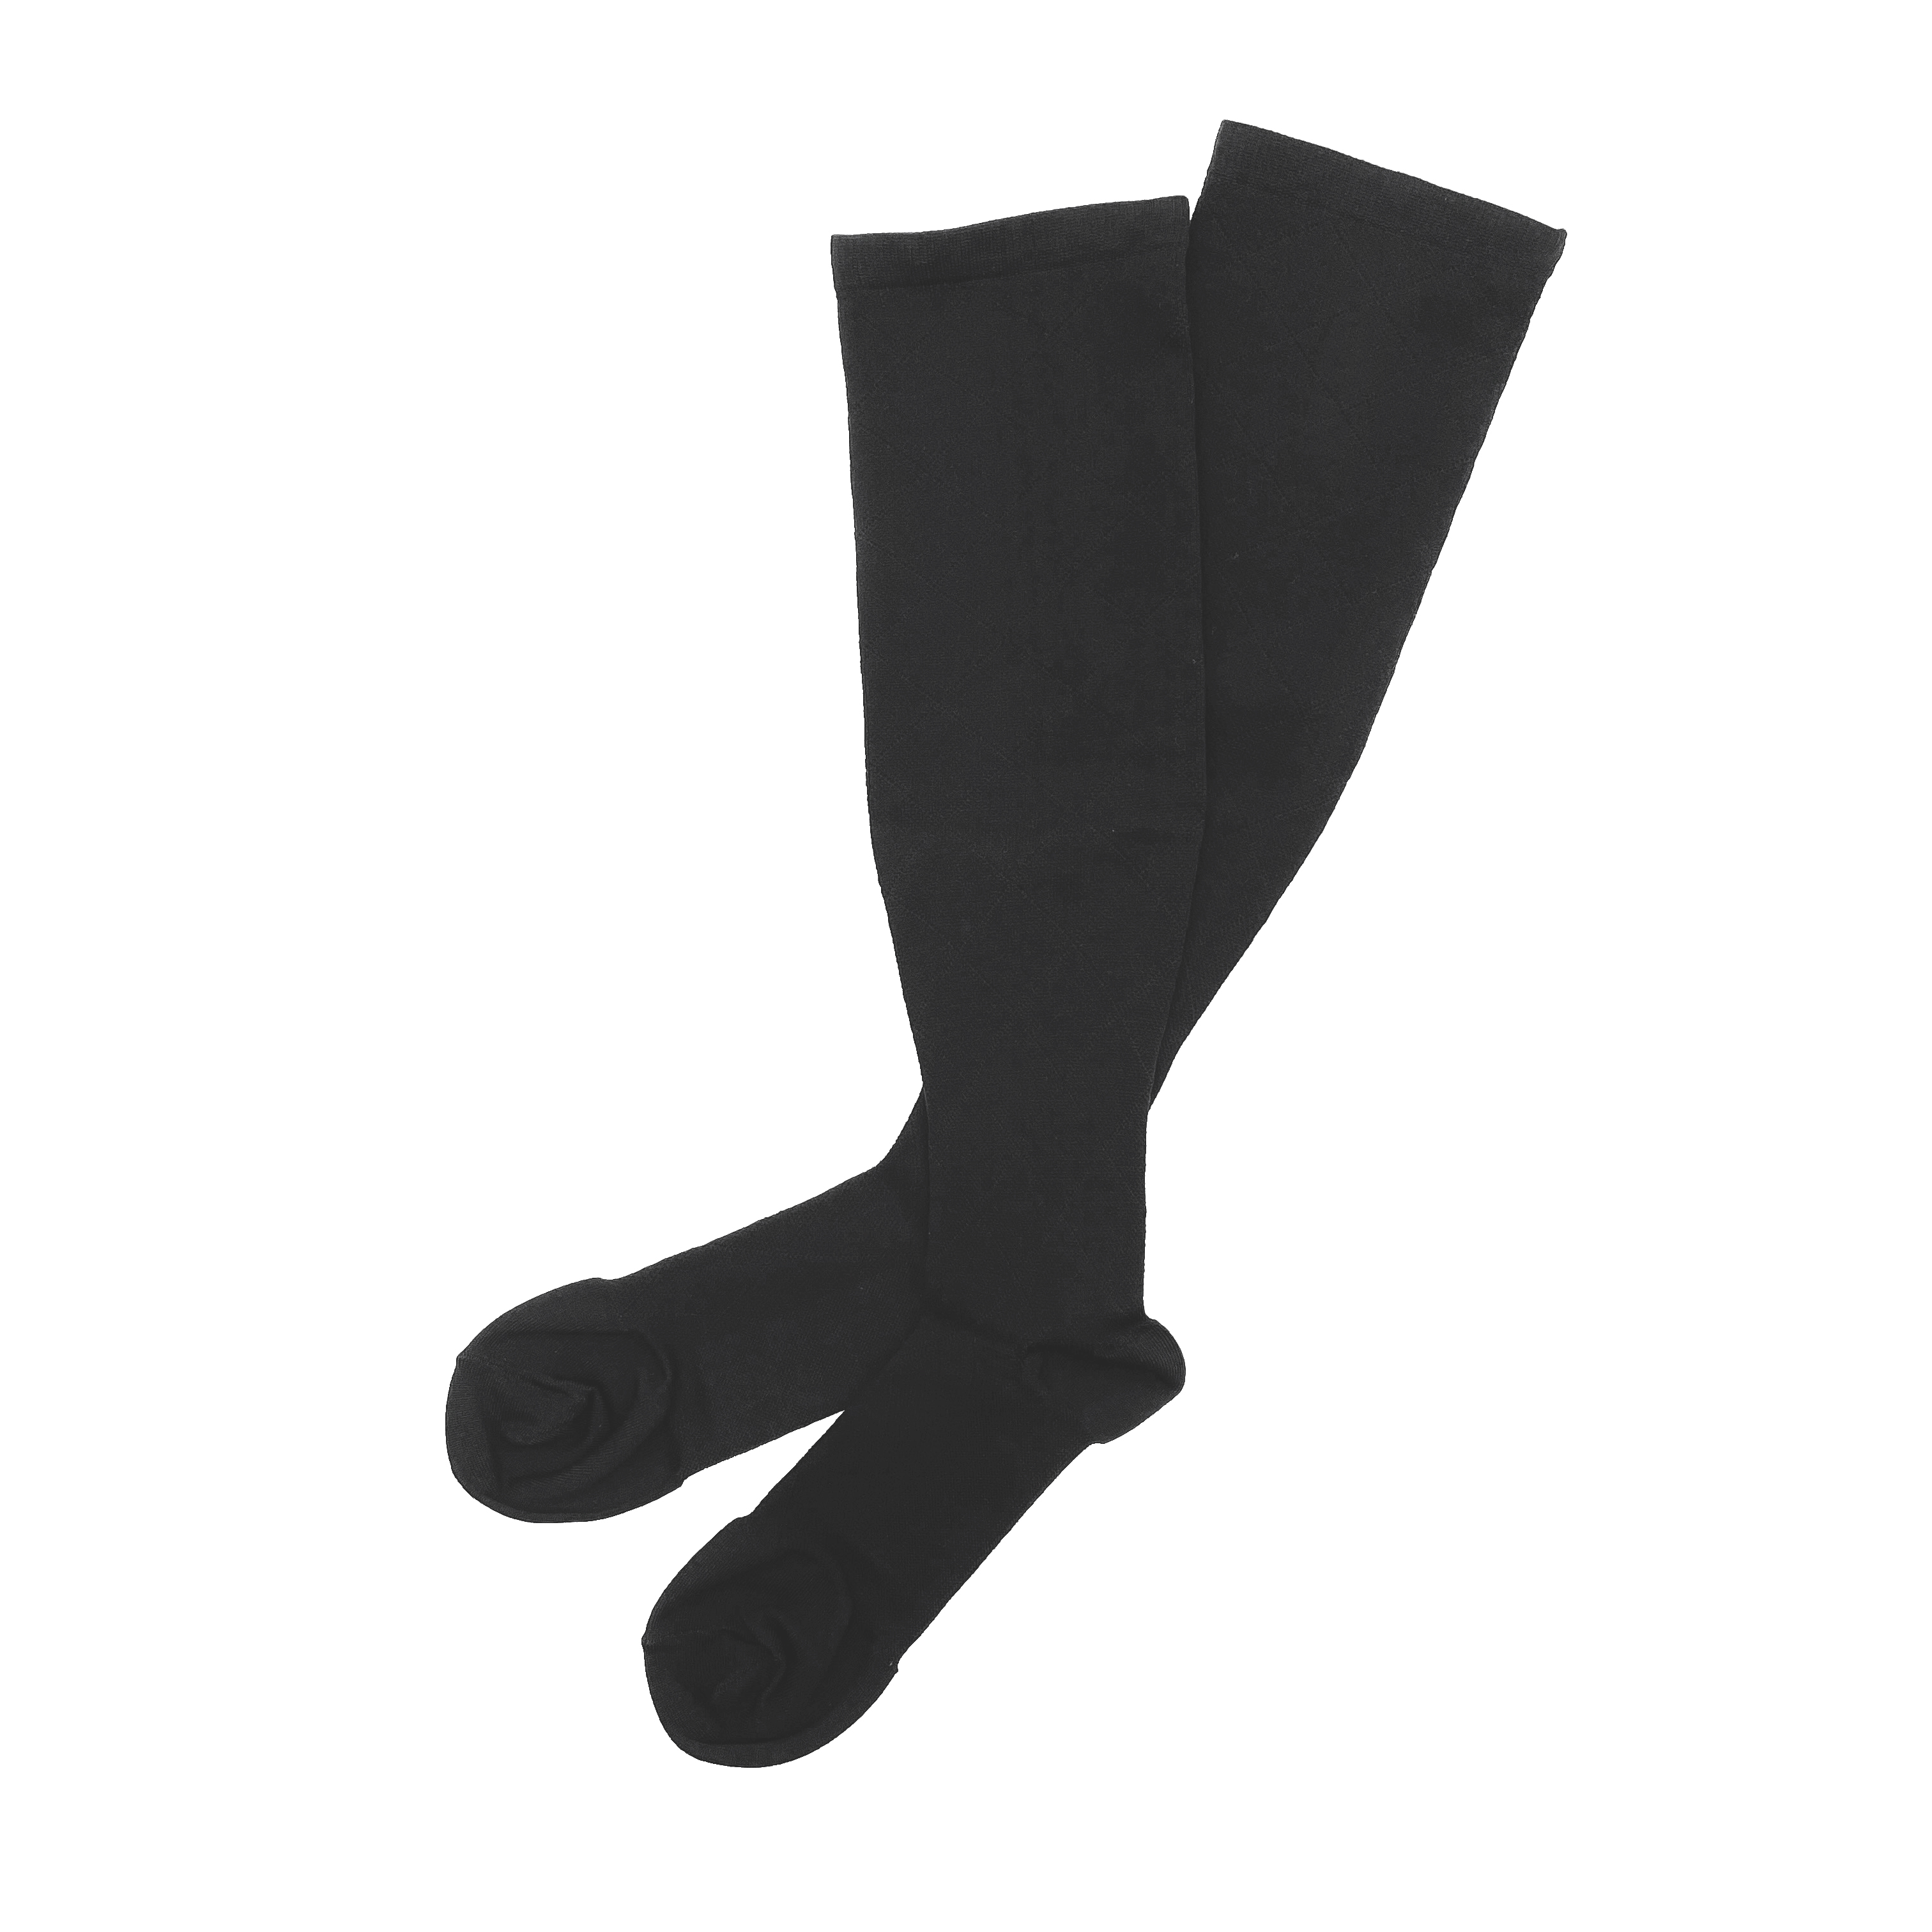  fuwaの商品一覧 - e-socks